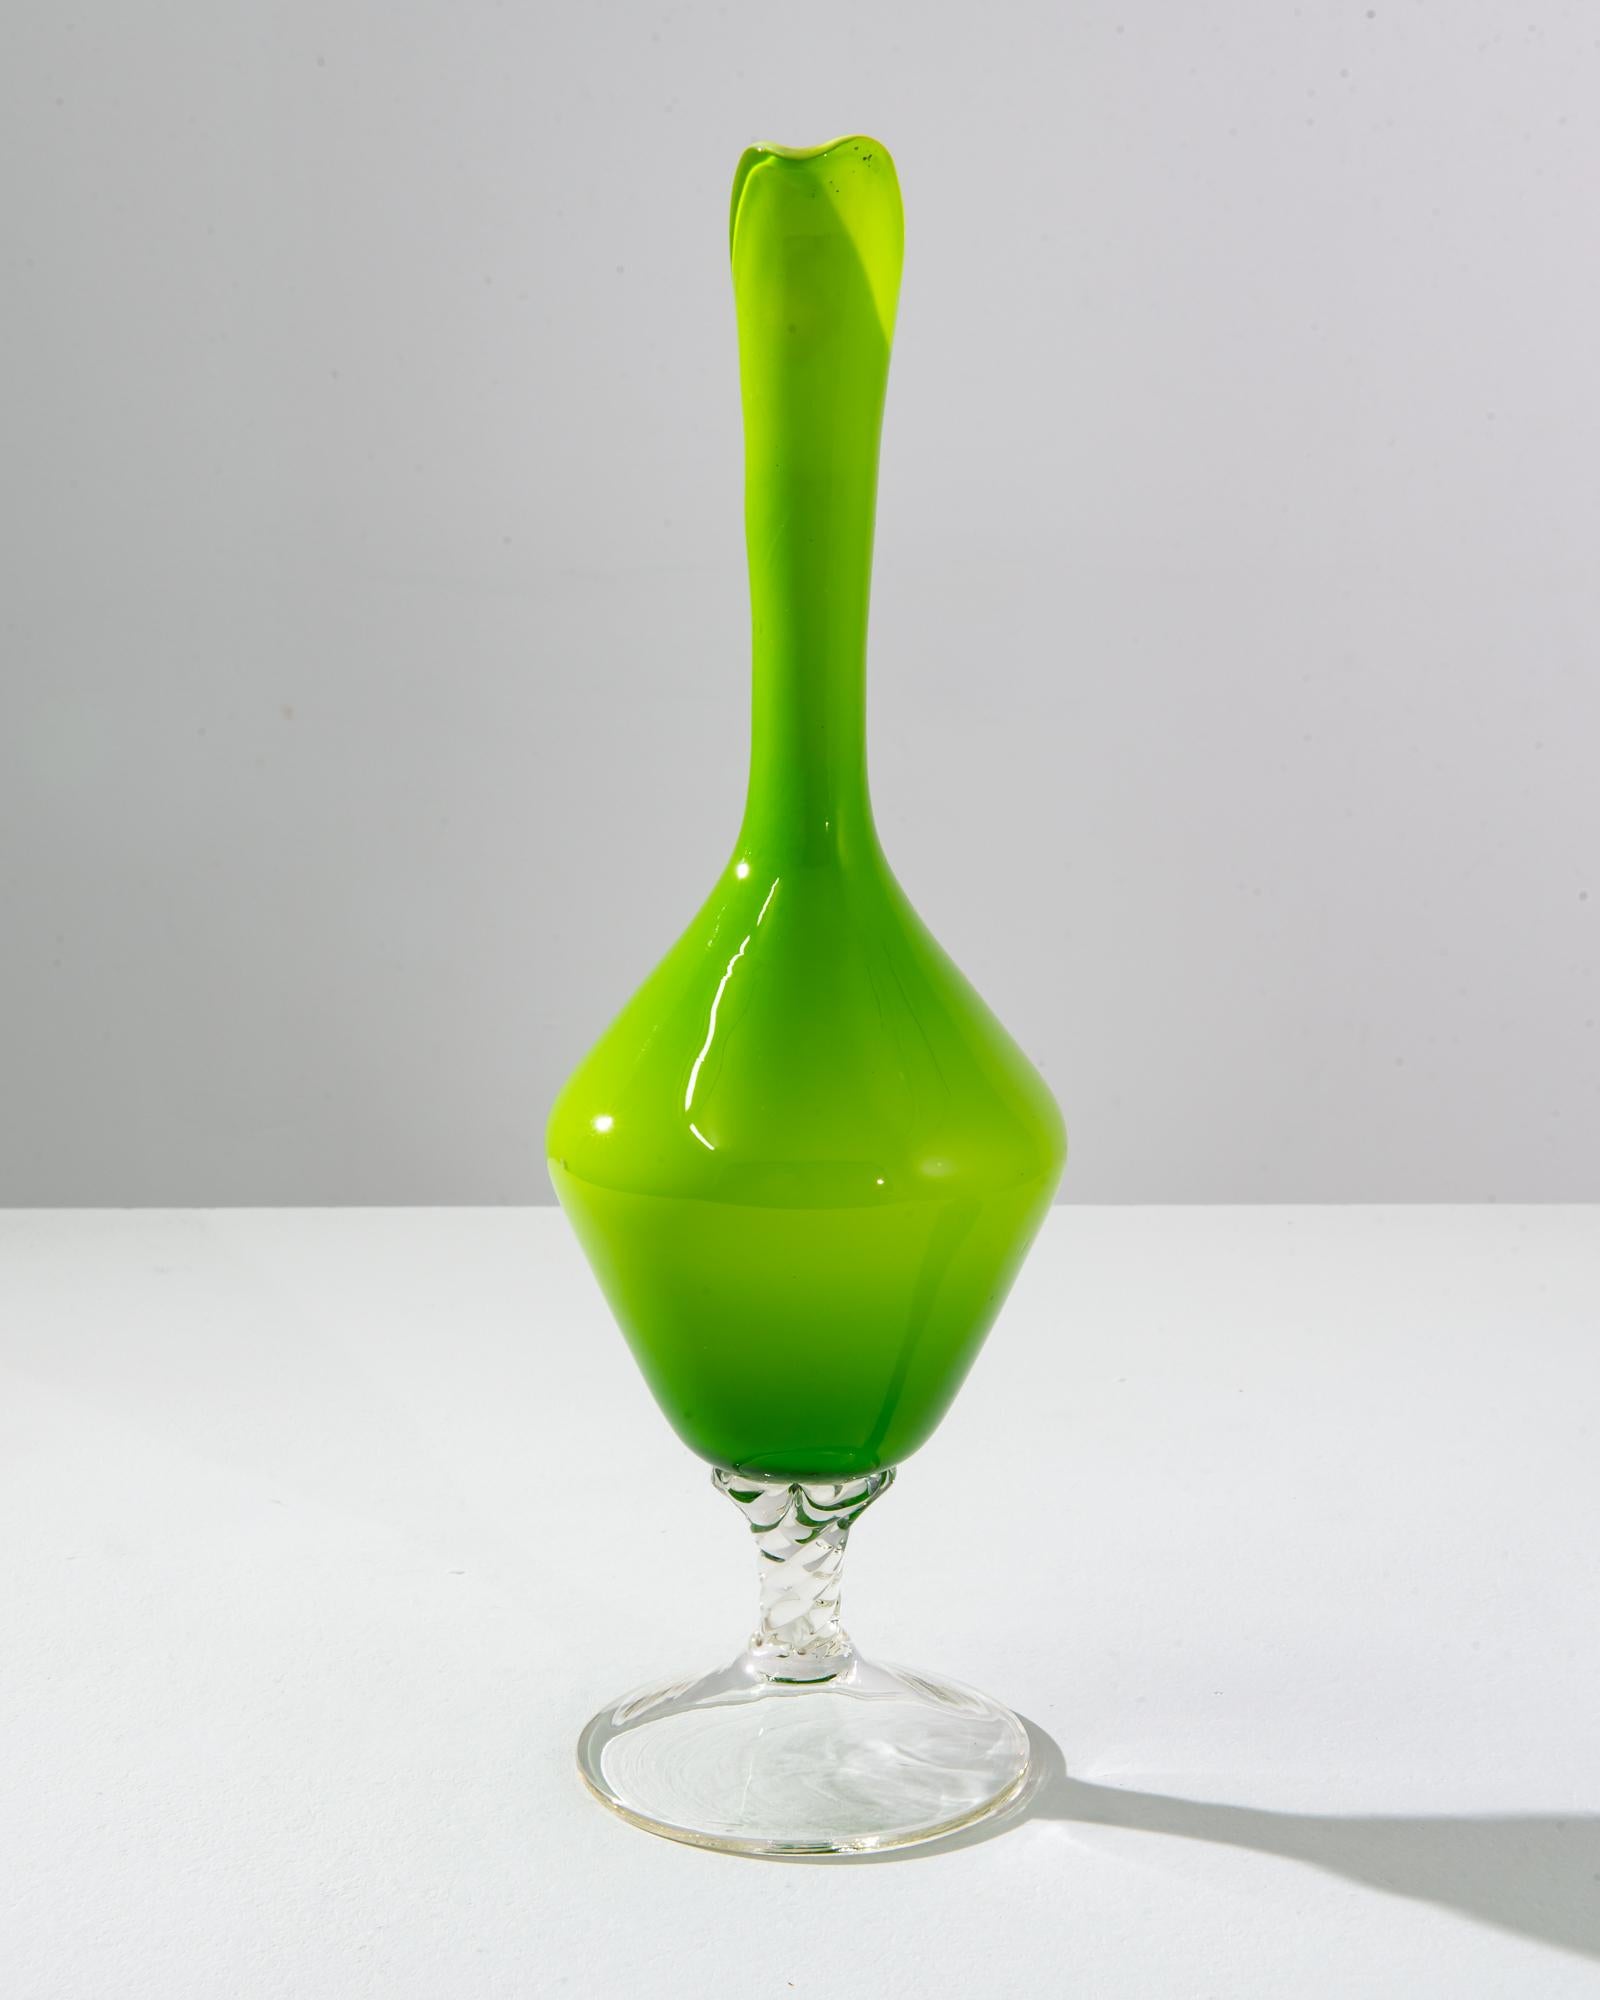 Ce pichet en verre vert italien des années 1960 est un splendide exemple de l'éthique du design audacieux et expressif de l'époque. Son corps lumineux vert citron vert attire le regard, évoquant le zeste frais des agrumes et la vivacité du